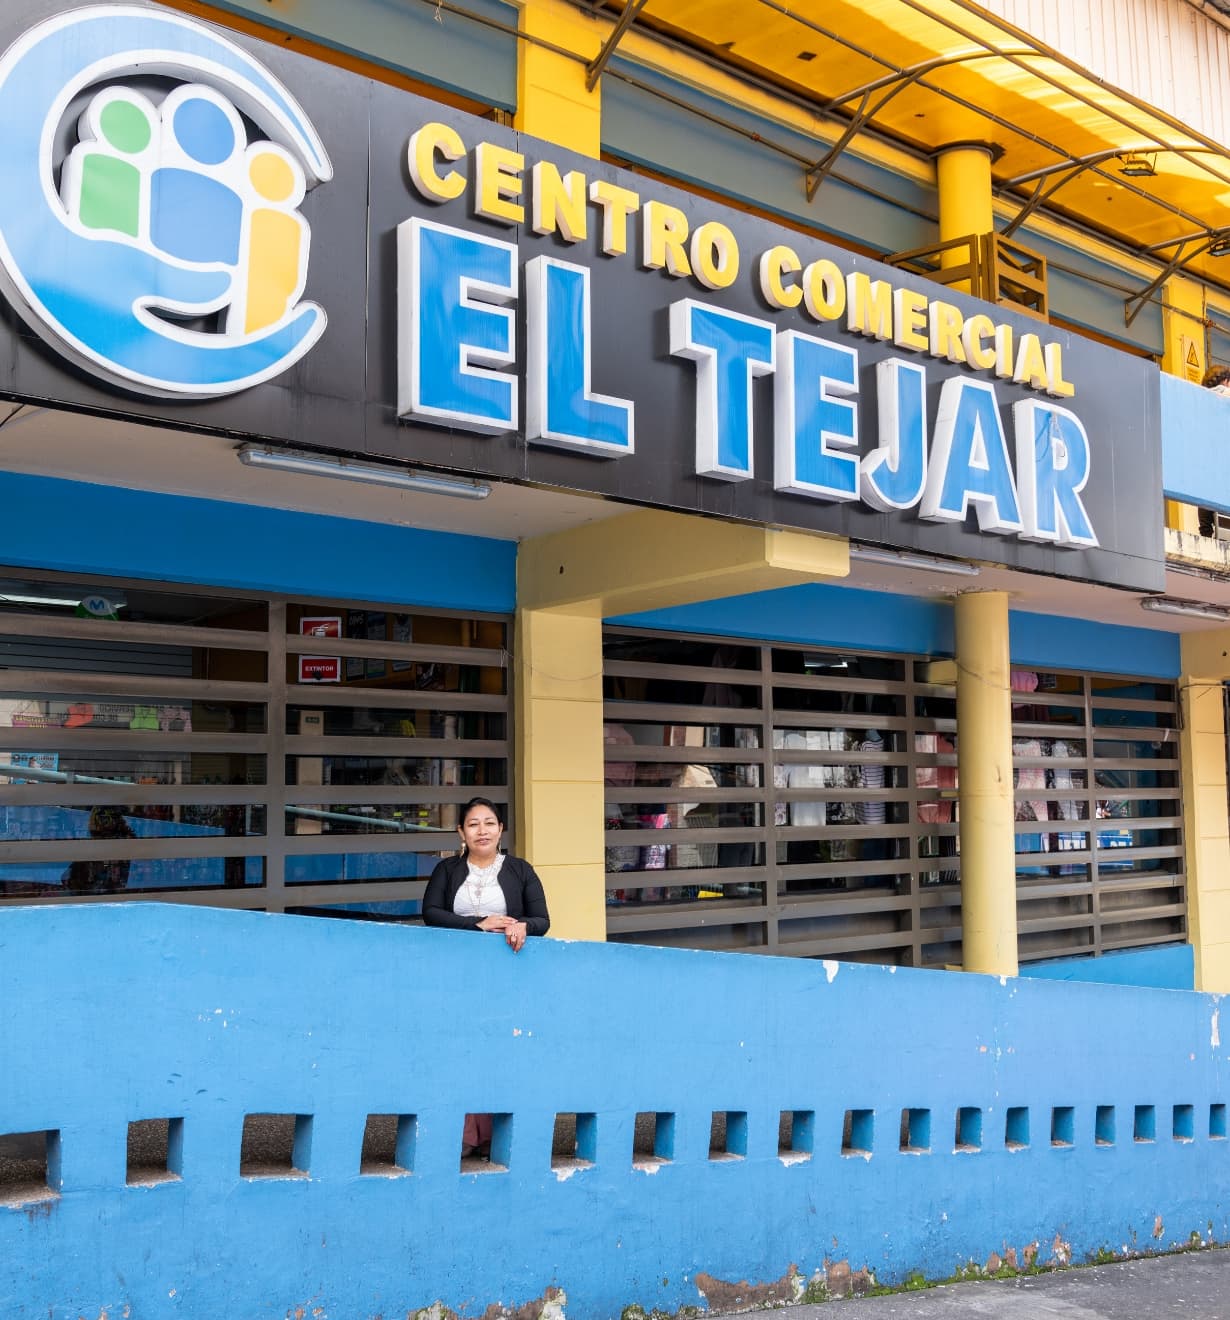 Nelly devant le Centro Comercial El Tejar, où se trouve son magasin